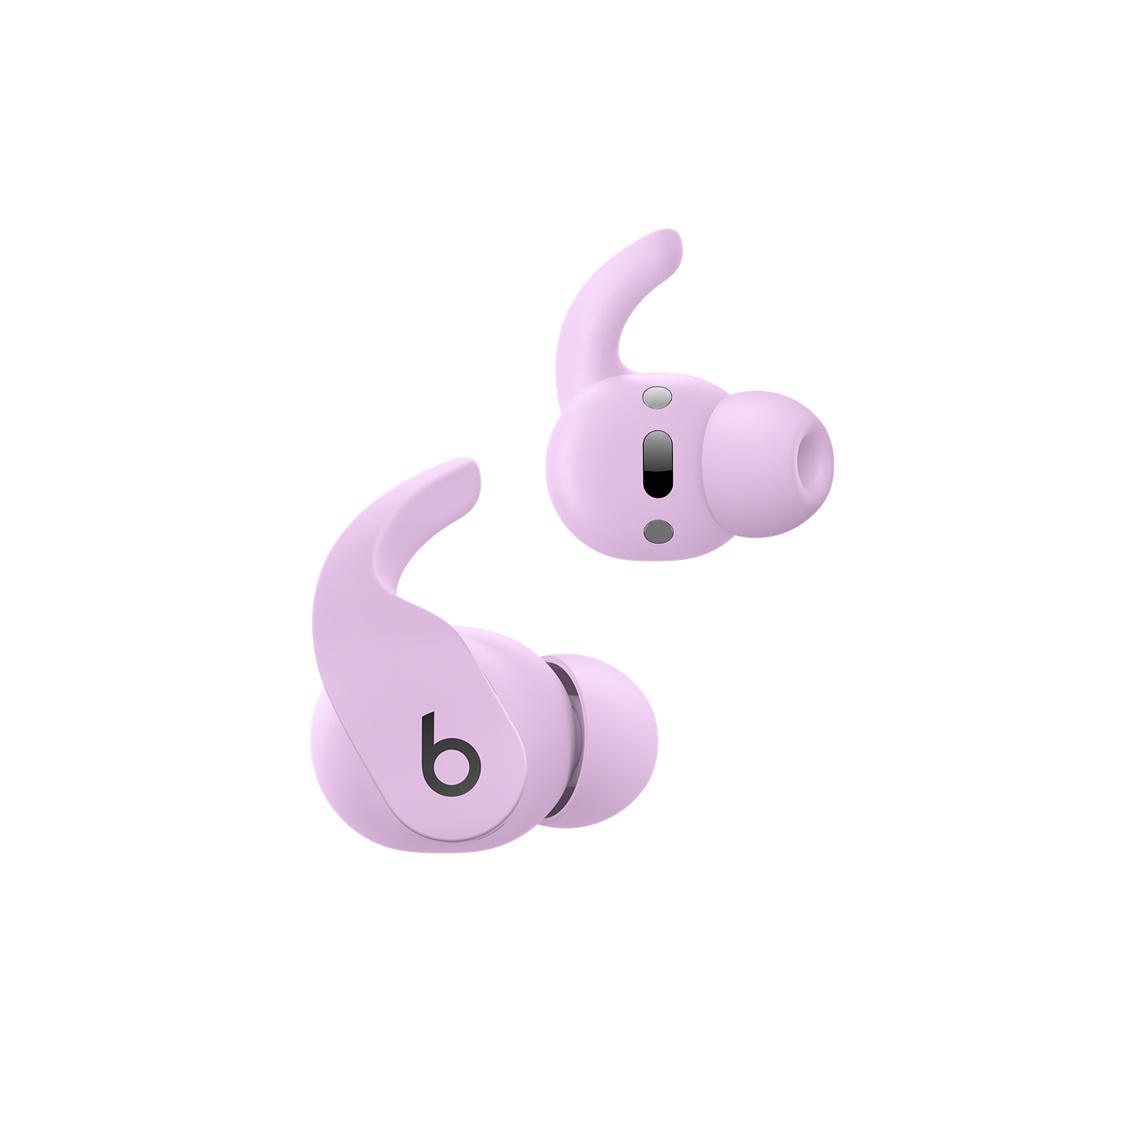 Beats Fit Pro vezeték nélküli fülhallgató akáclila színben, a fülrészbe integrált vezérlőkkel, amelyek révén telefonhívásokat bonyolíthatsz és kezelheted a zenelejátszást. 